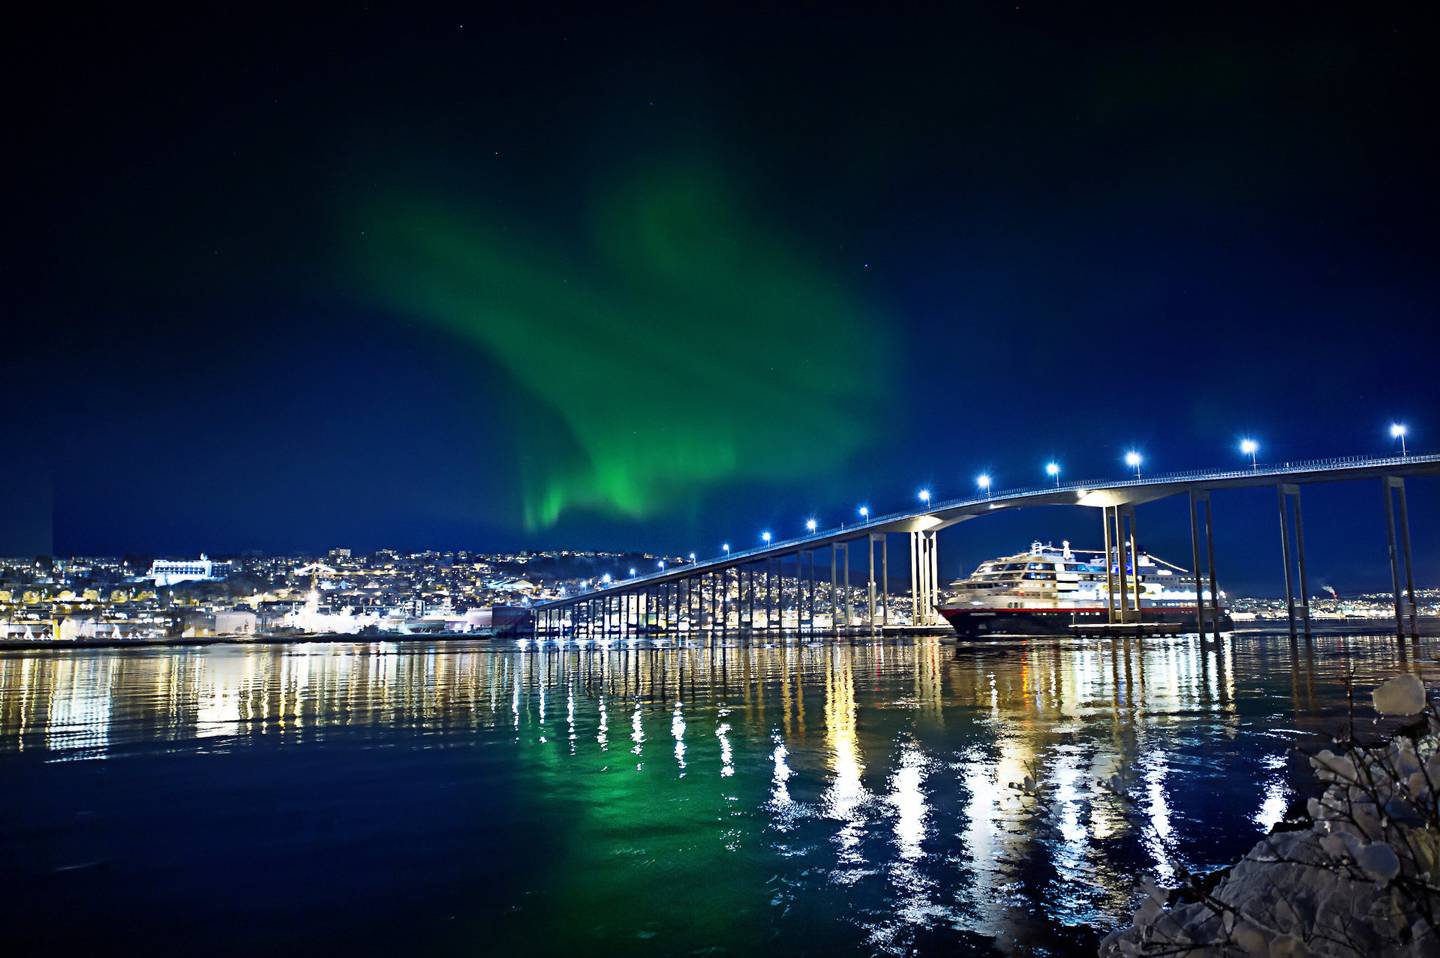 Tusenvis feirer jul på Hurtigruten, som ligger til kai på julaften. FOTO: KNUT JENSEN/HURTIGRUTEN